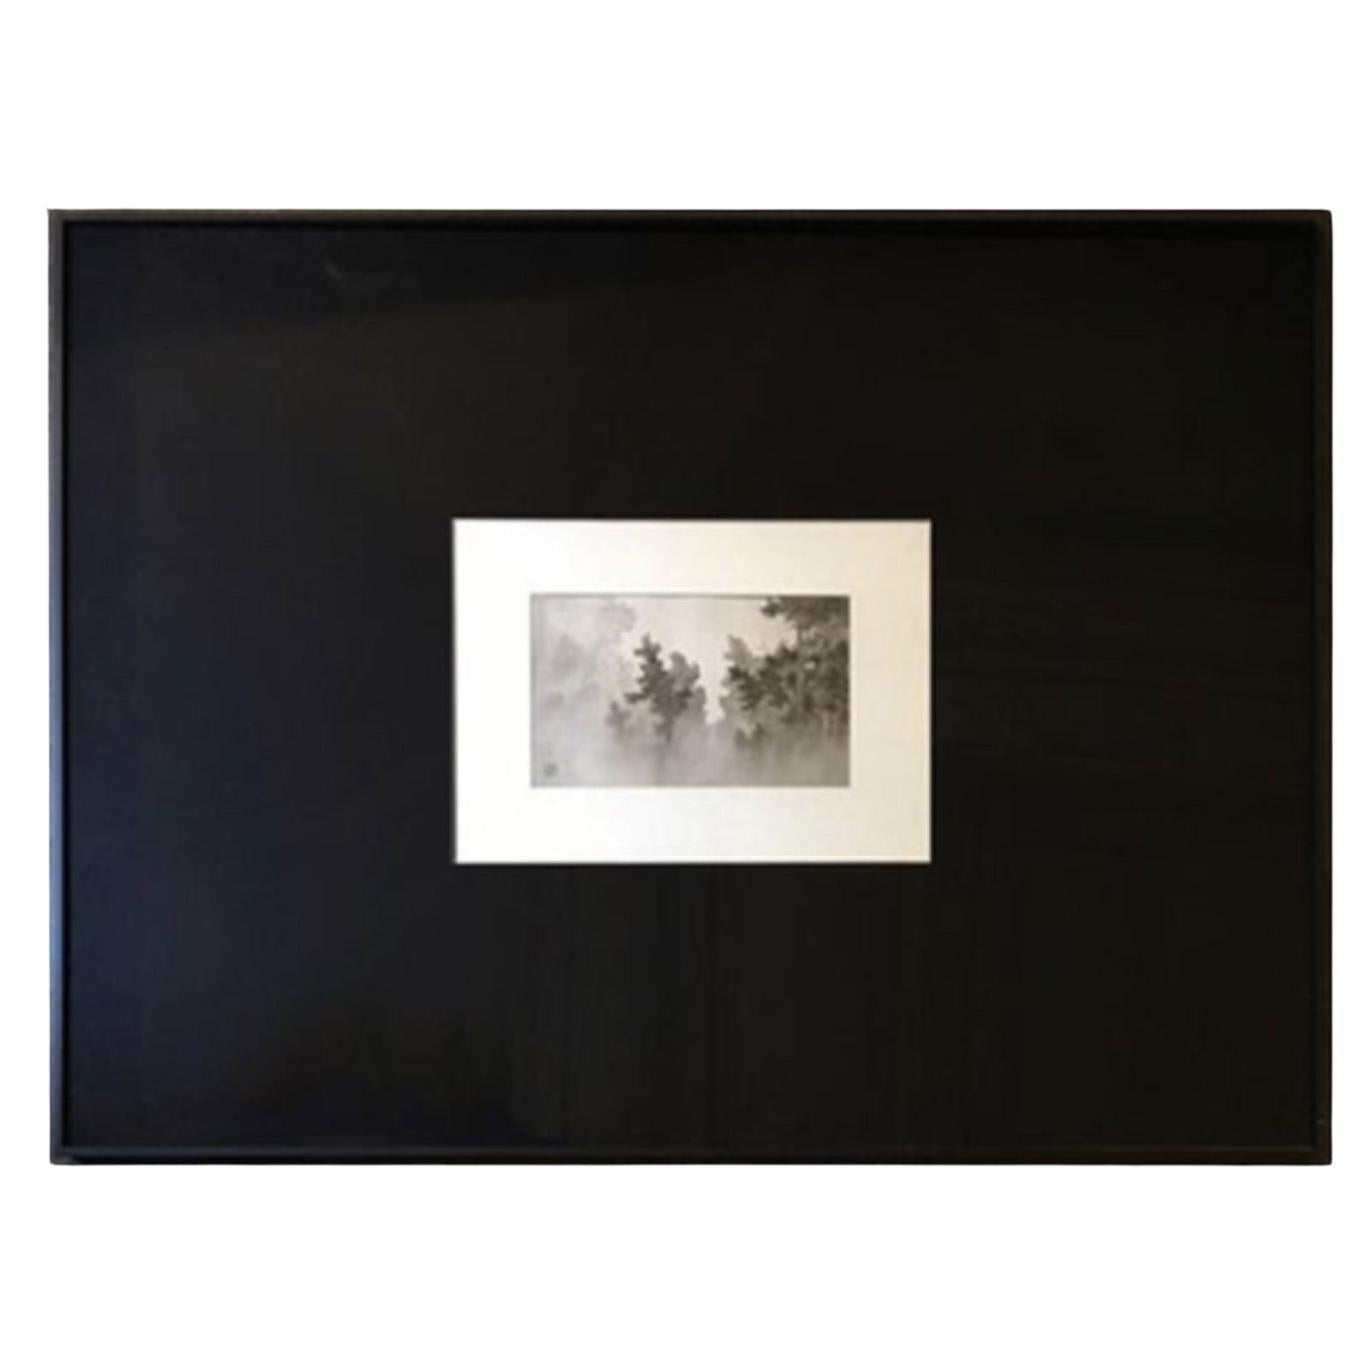 Japanischer Schwarz-Weiß-Papierdruck eines antiken Raumteilers aus dem frühen 20. Jahrhundert